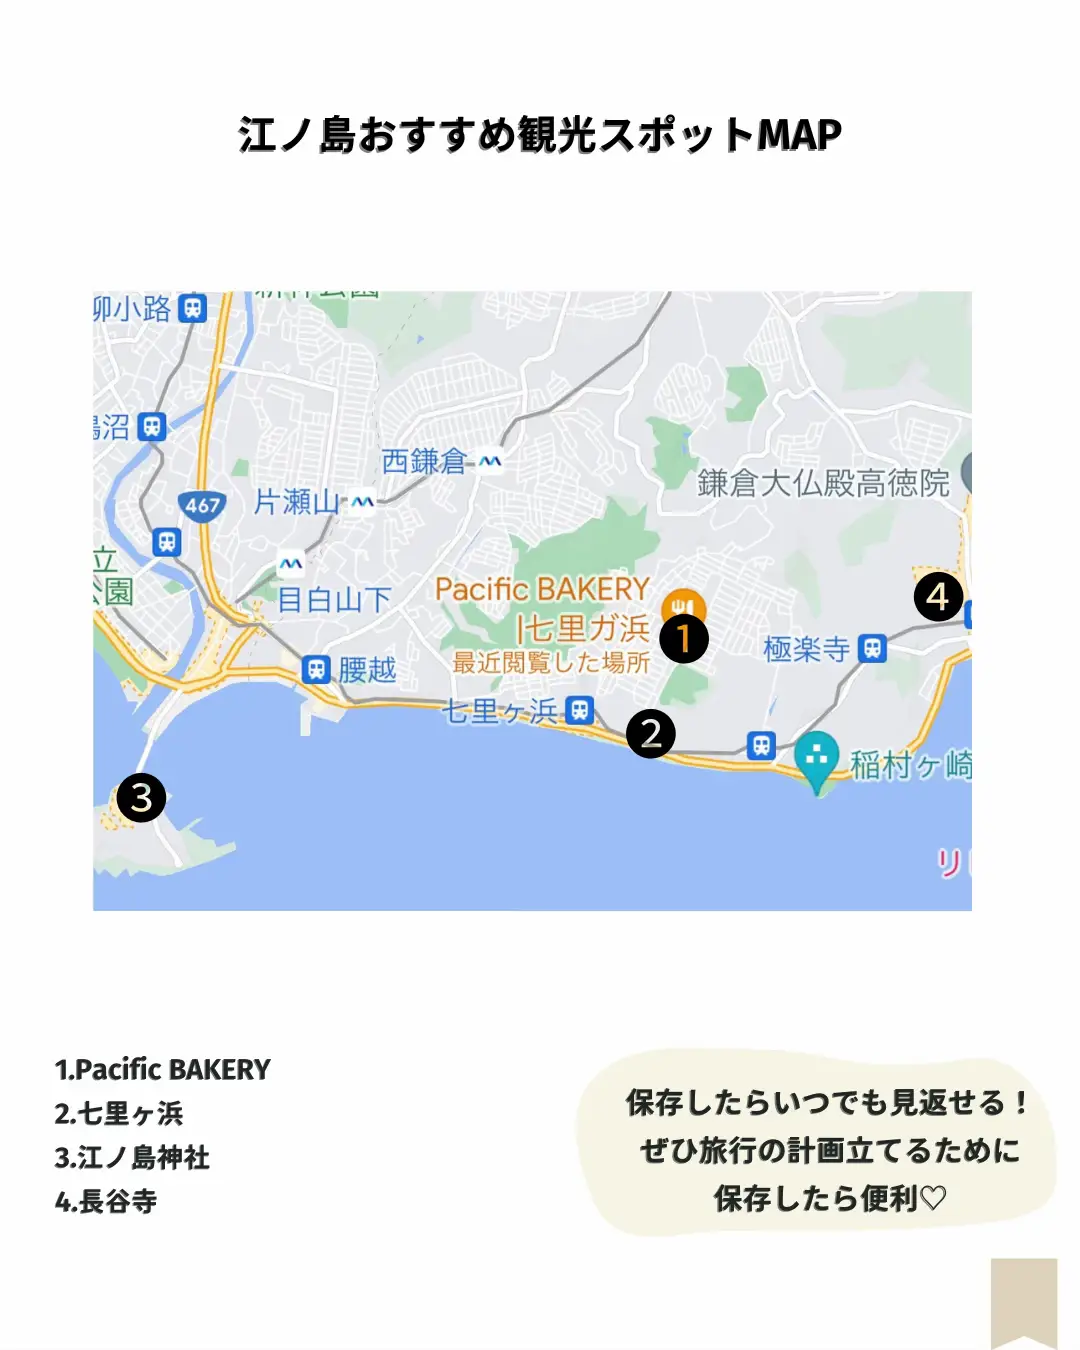 鎌倉 江ノ島 観光 マップ Pdf - Lemon8検索